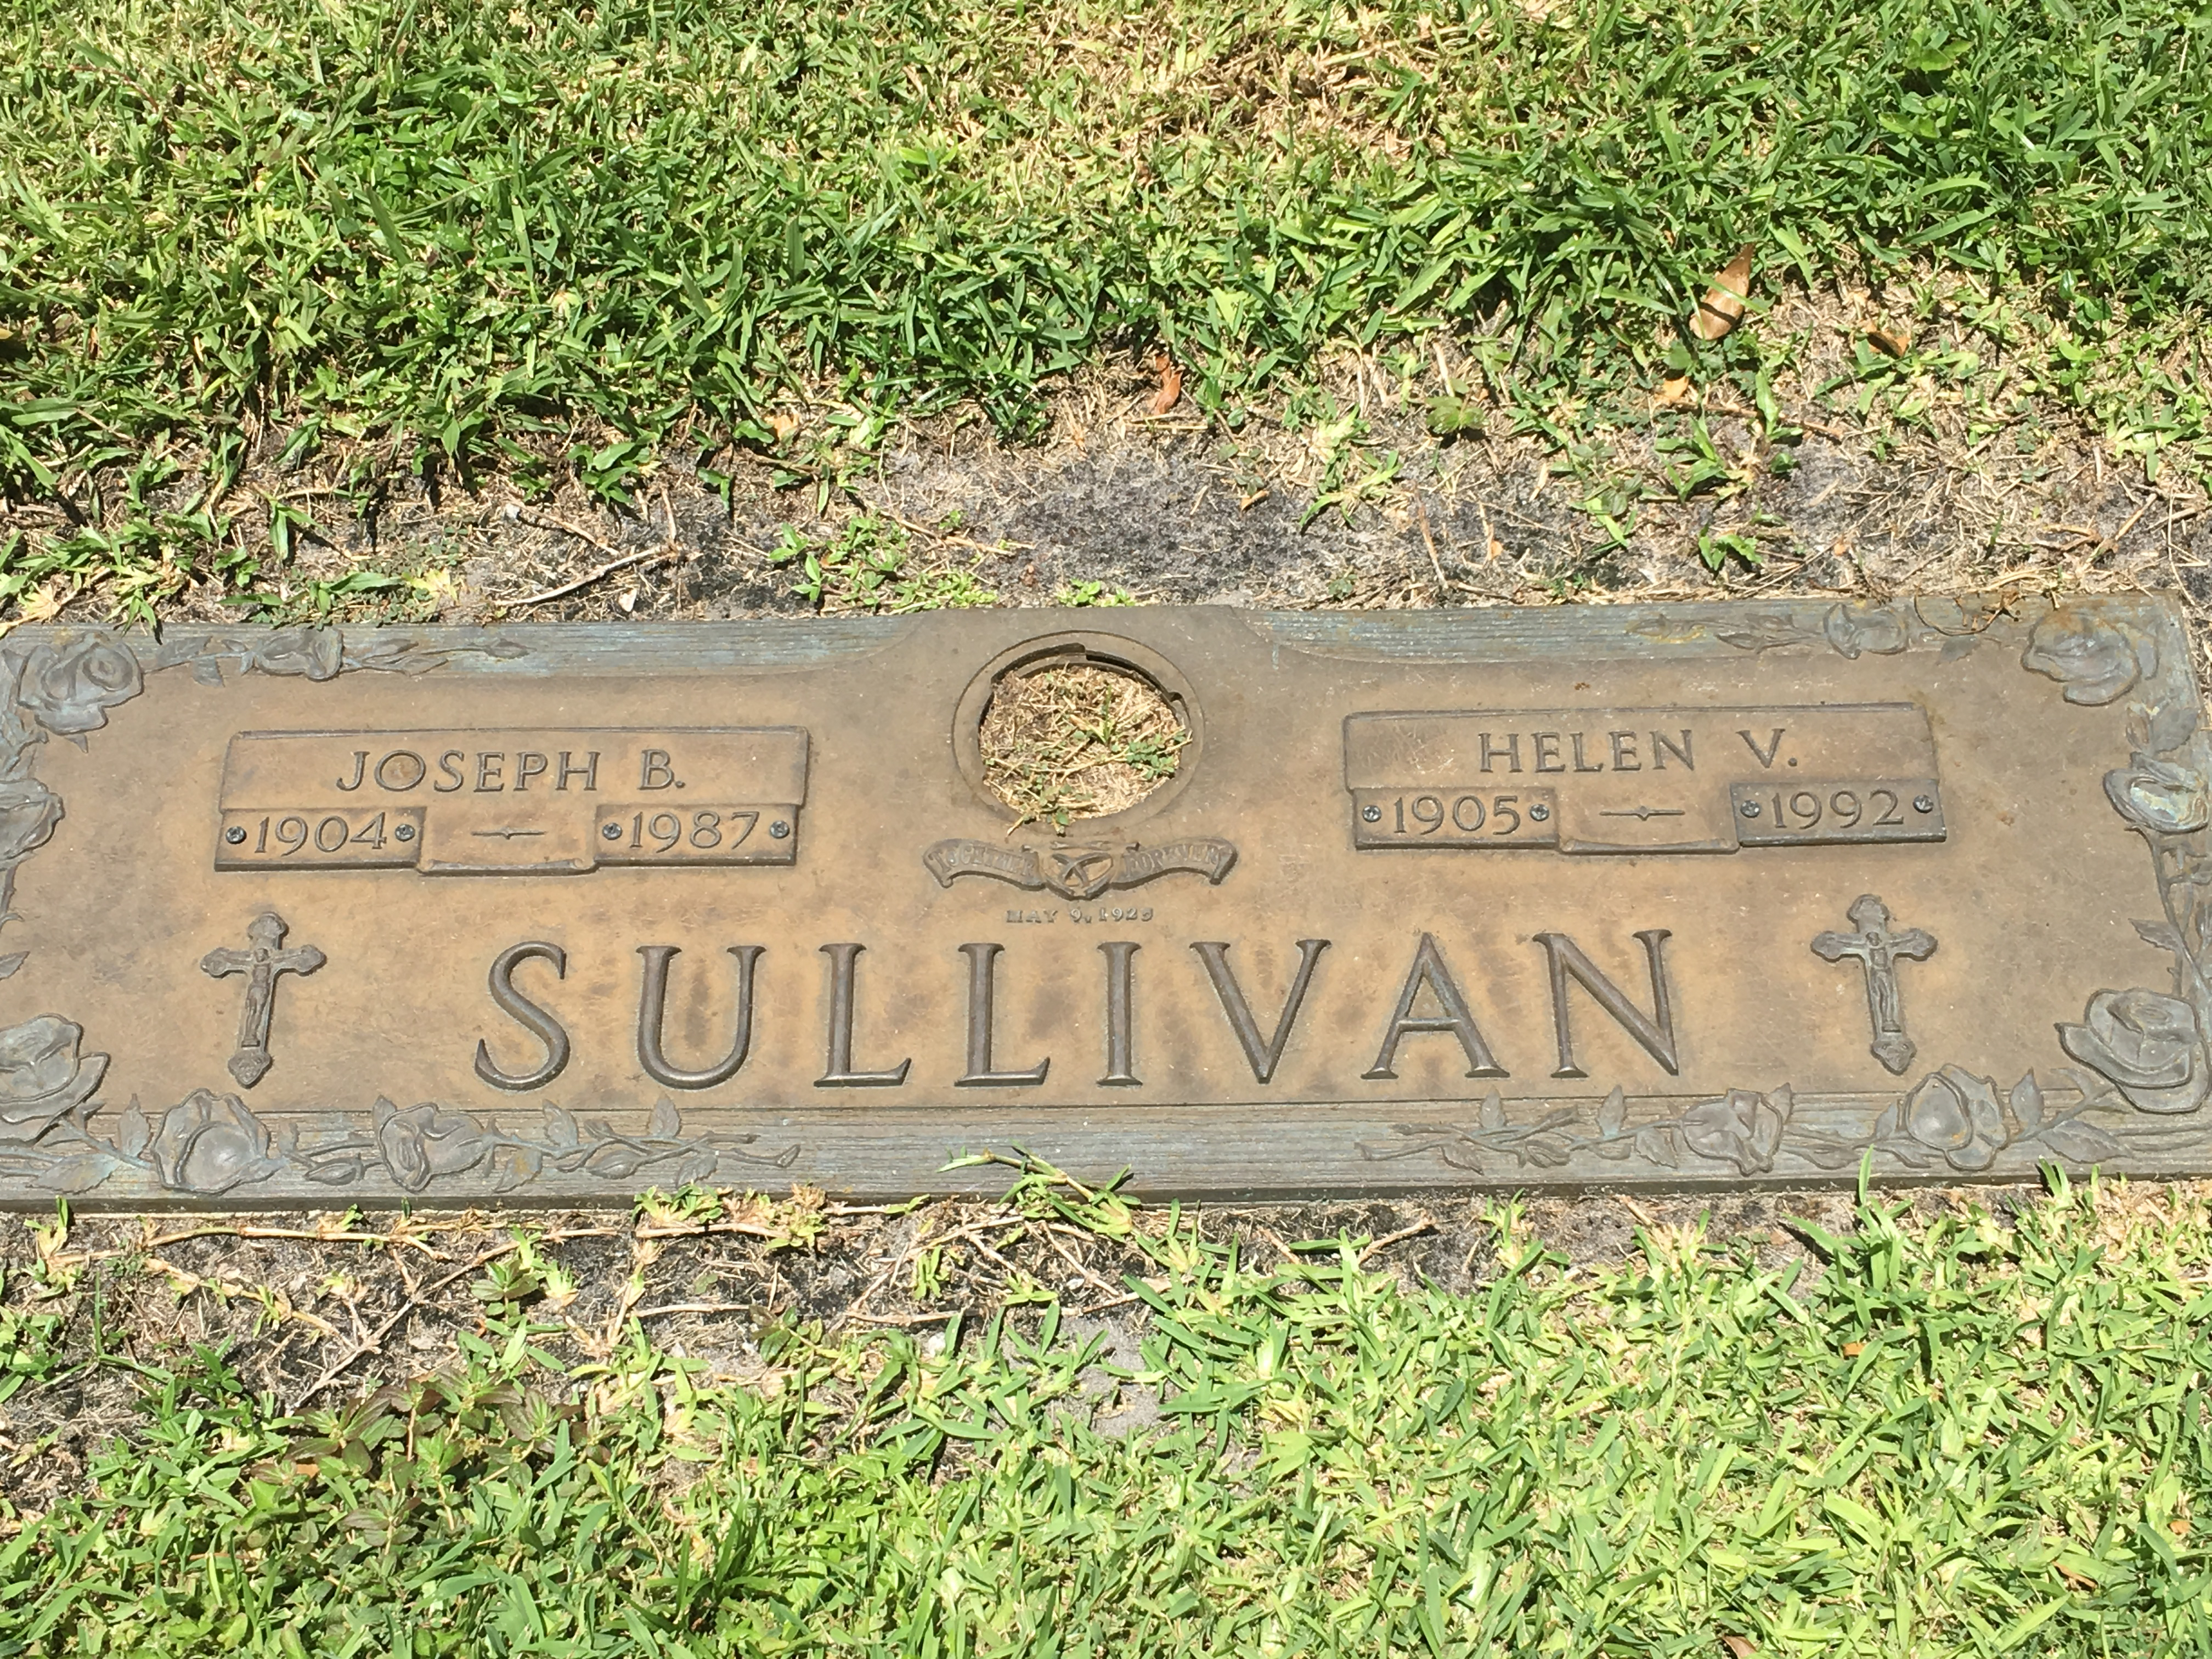 Helen V Sullivan